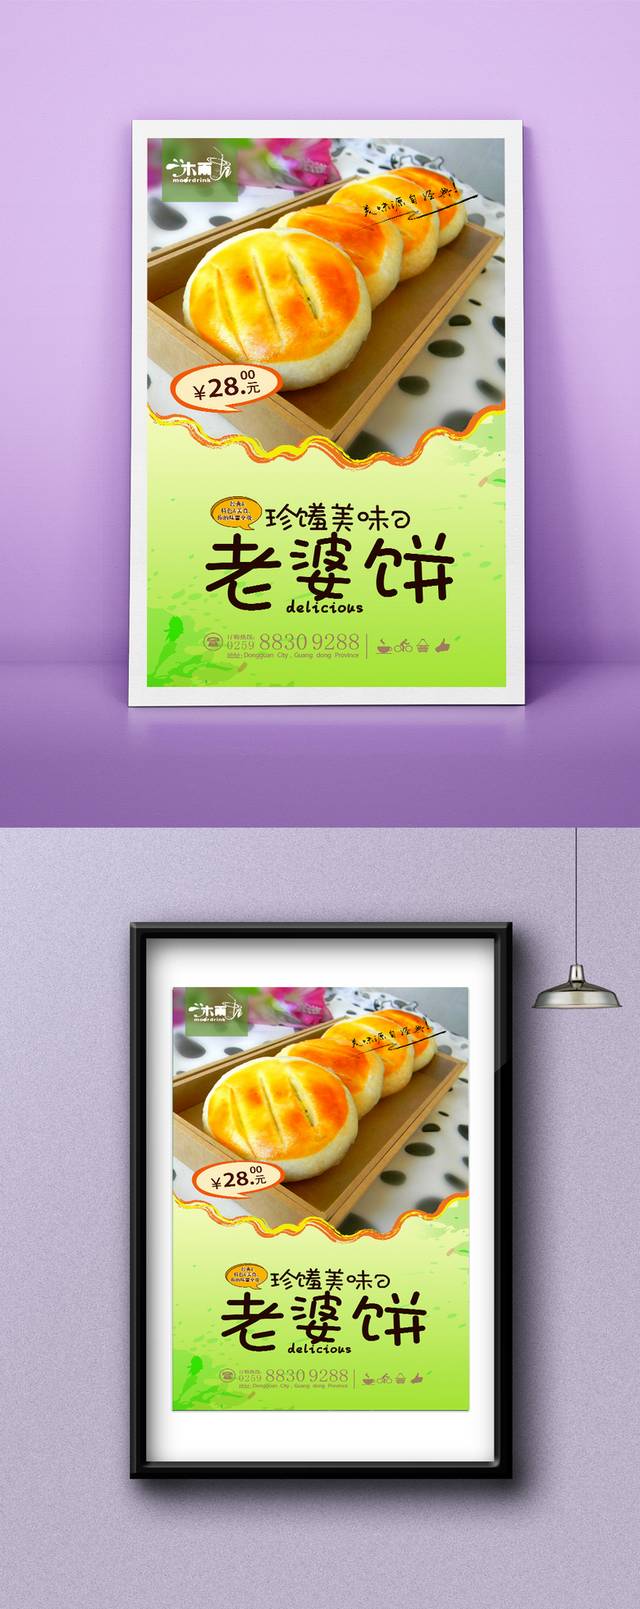 清新老婆饼宣传海报设计